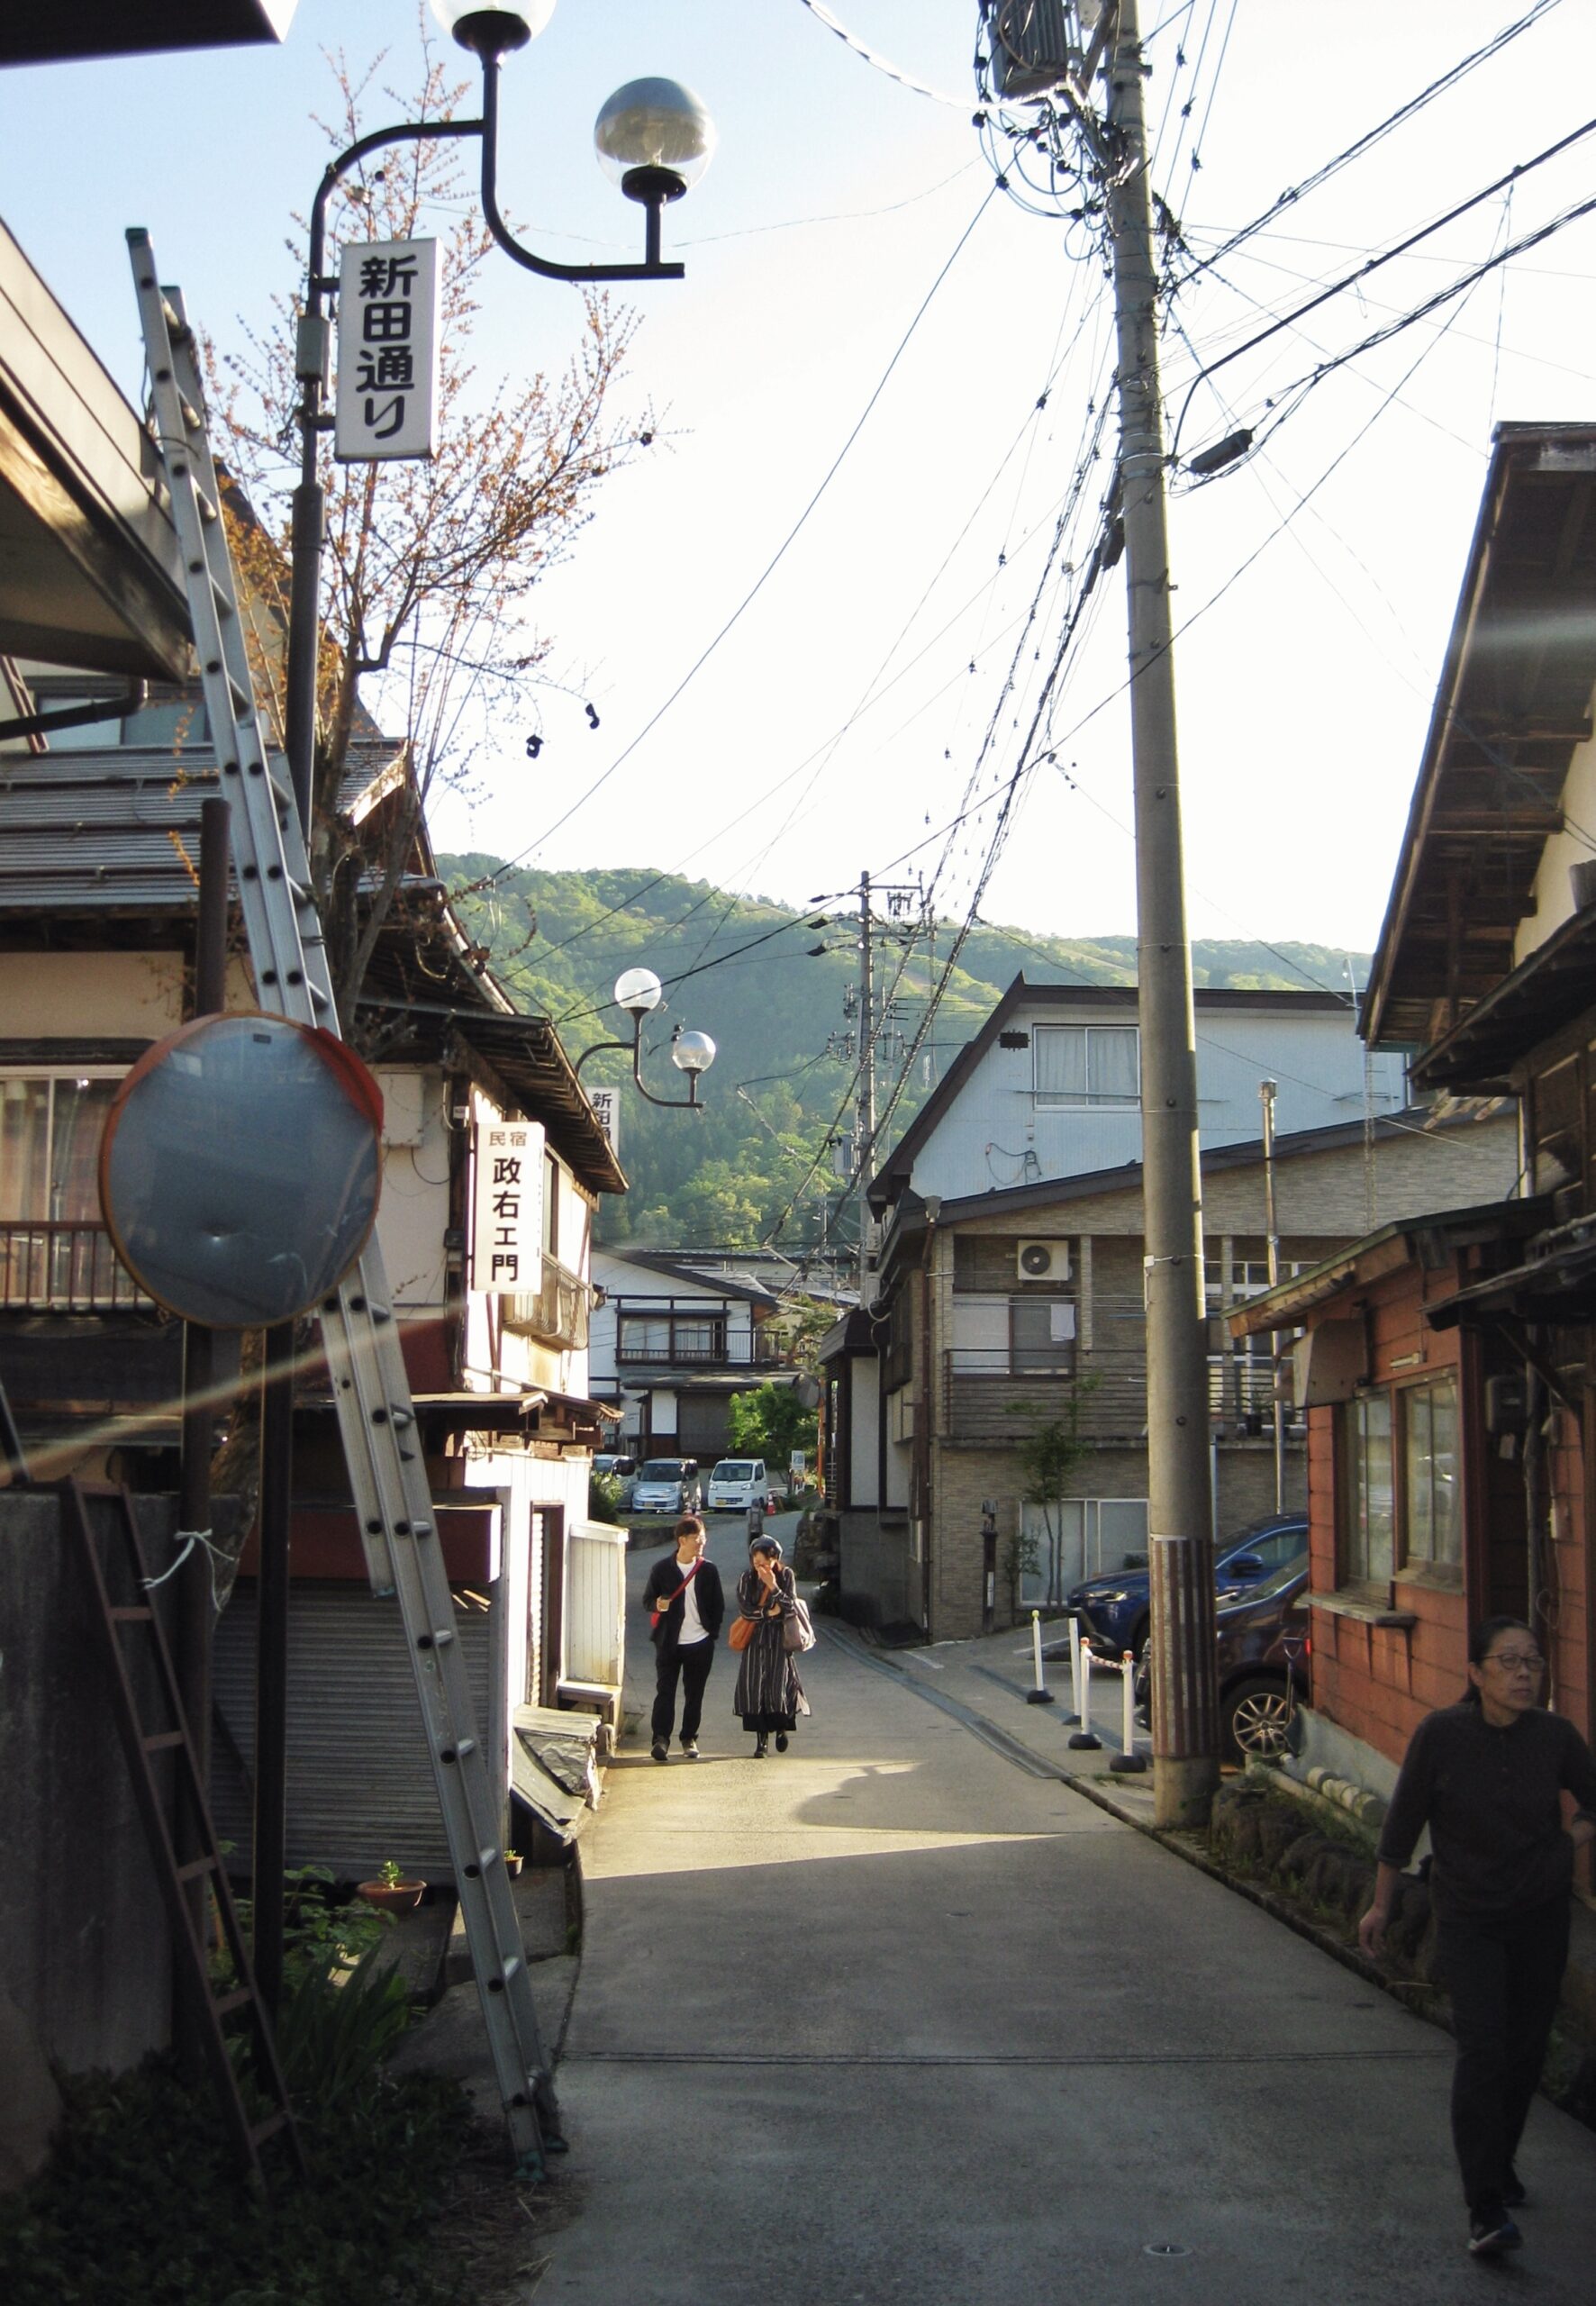 Nozawa Onsen Village during the Green Season